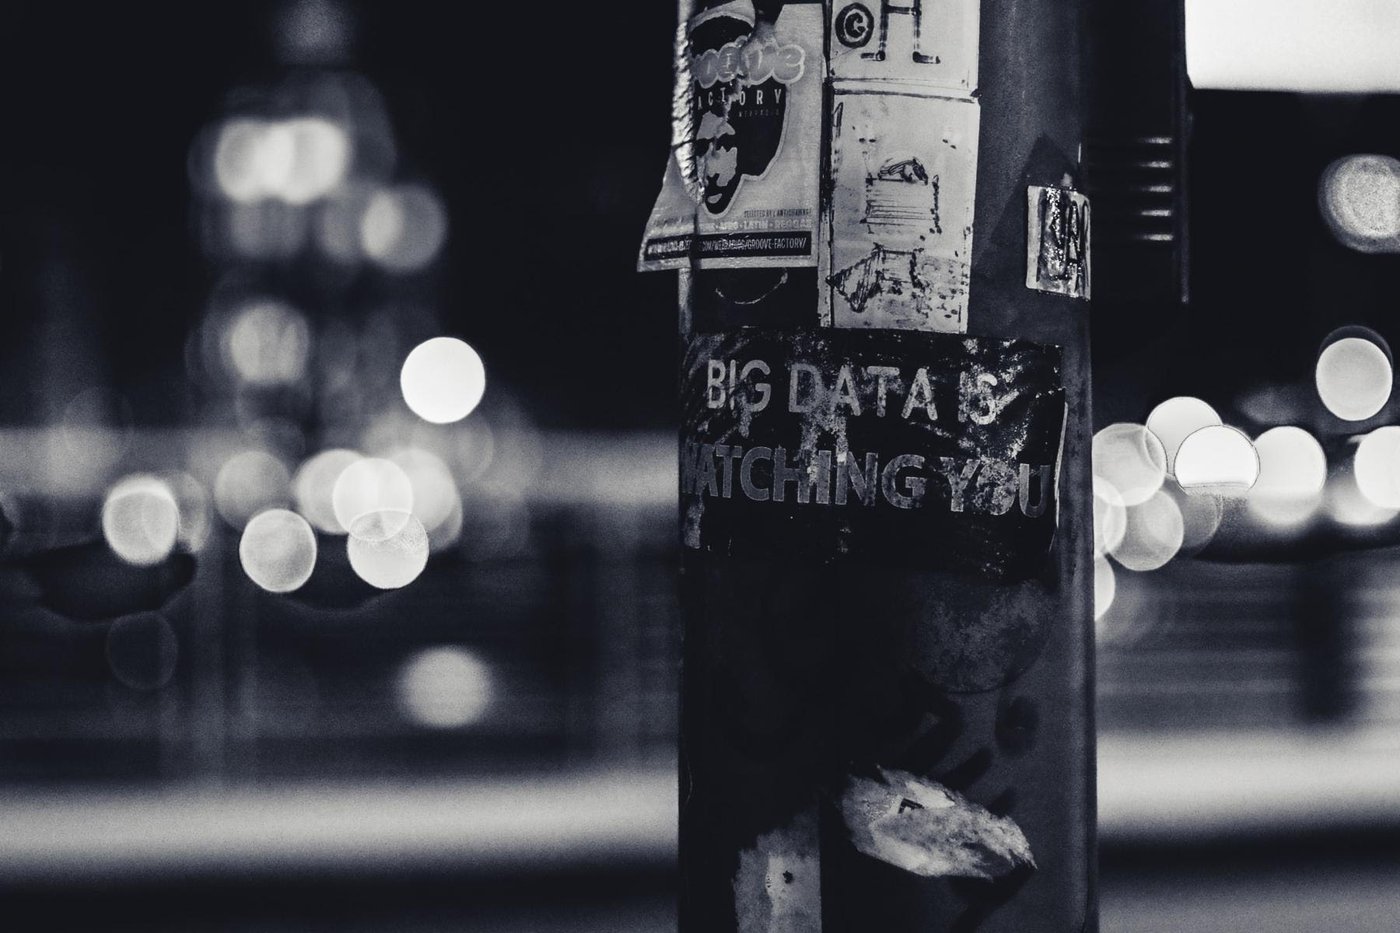 Schwarz-weiß-Foto auf der eine mit Zetteln beklebte Säule zu sehen ist und die Aufschrift "Big data is watching you".